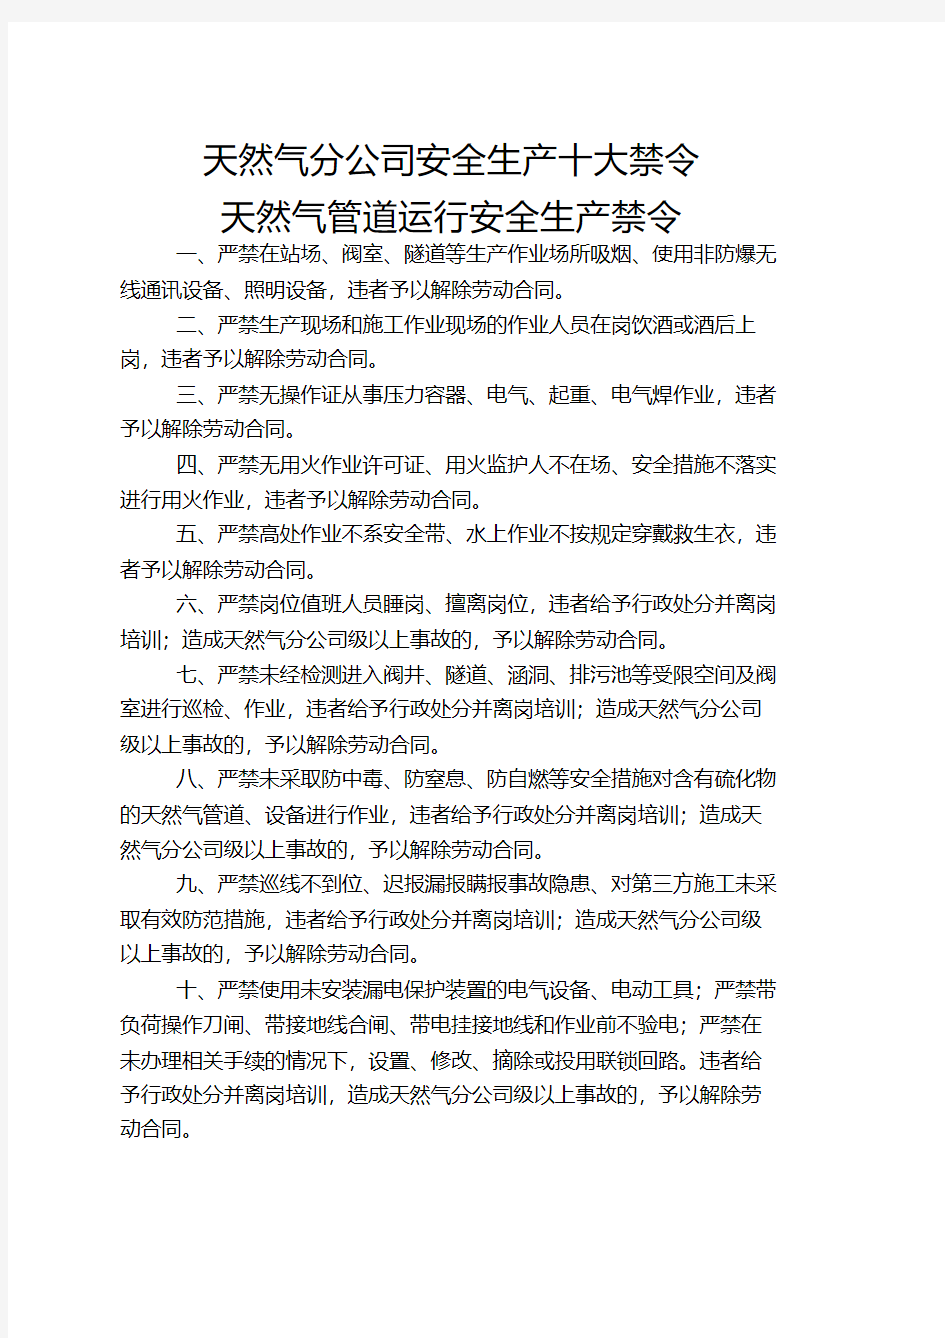 中国石化集团公司安全生产十大禁令